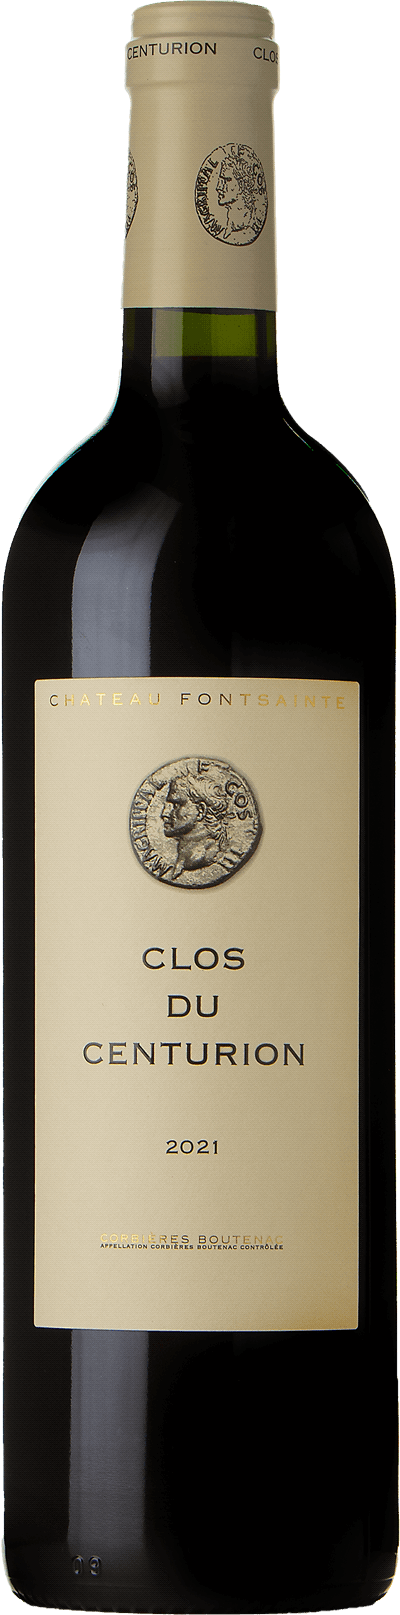 Clos du Centurion Domaine Fontsainte, 2021